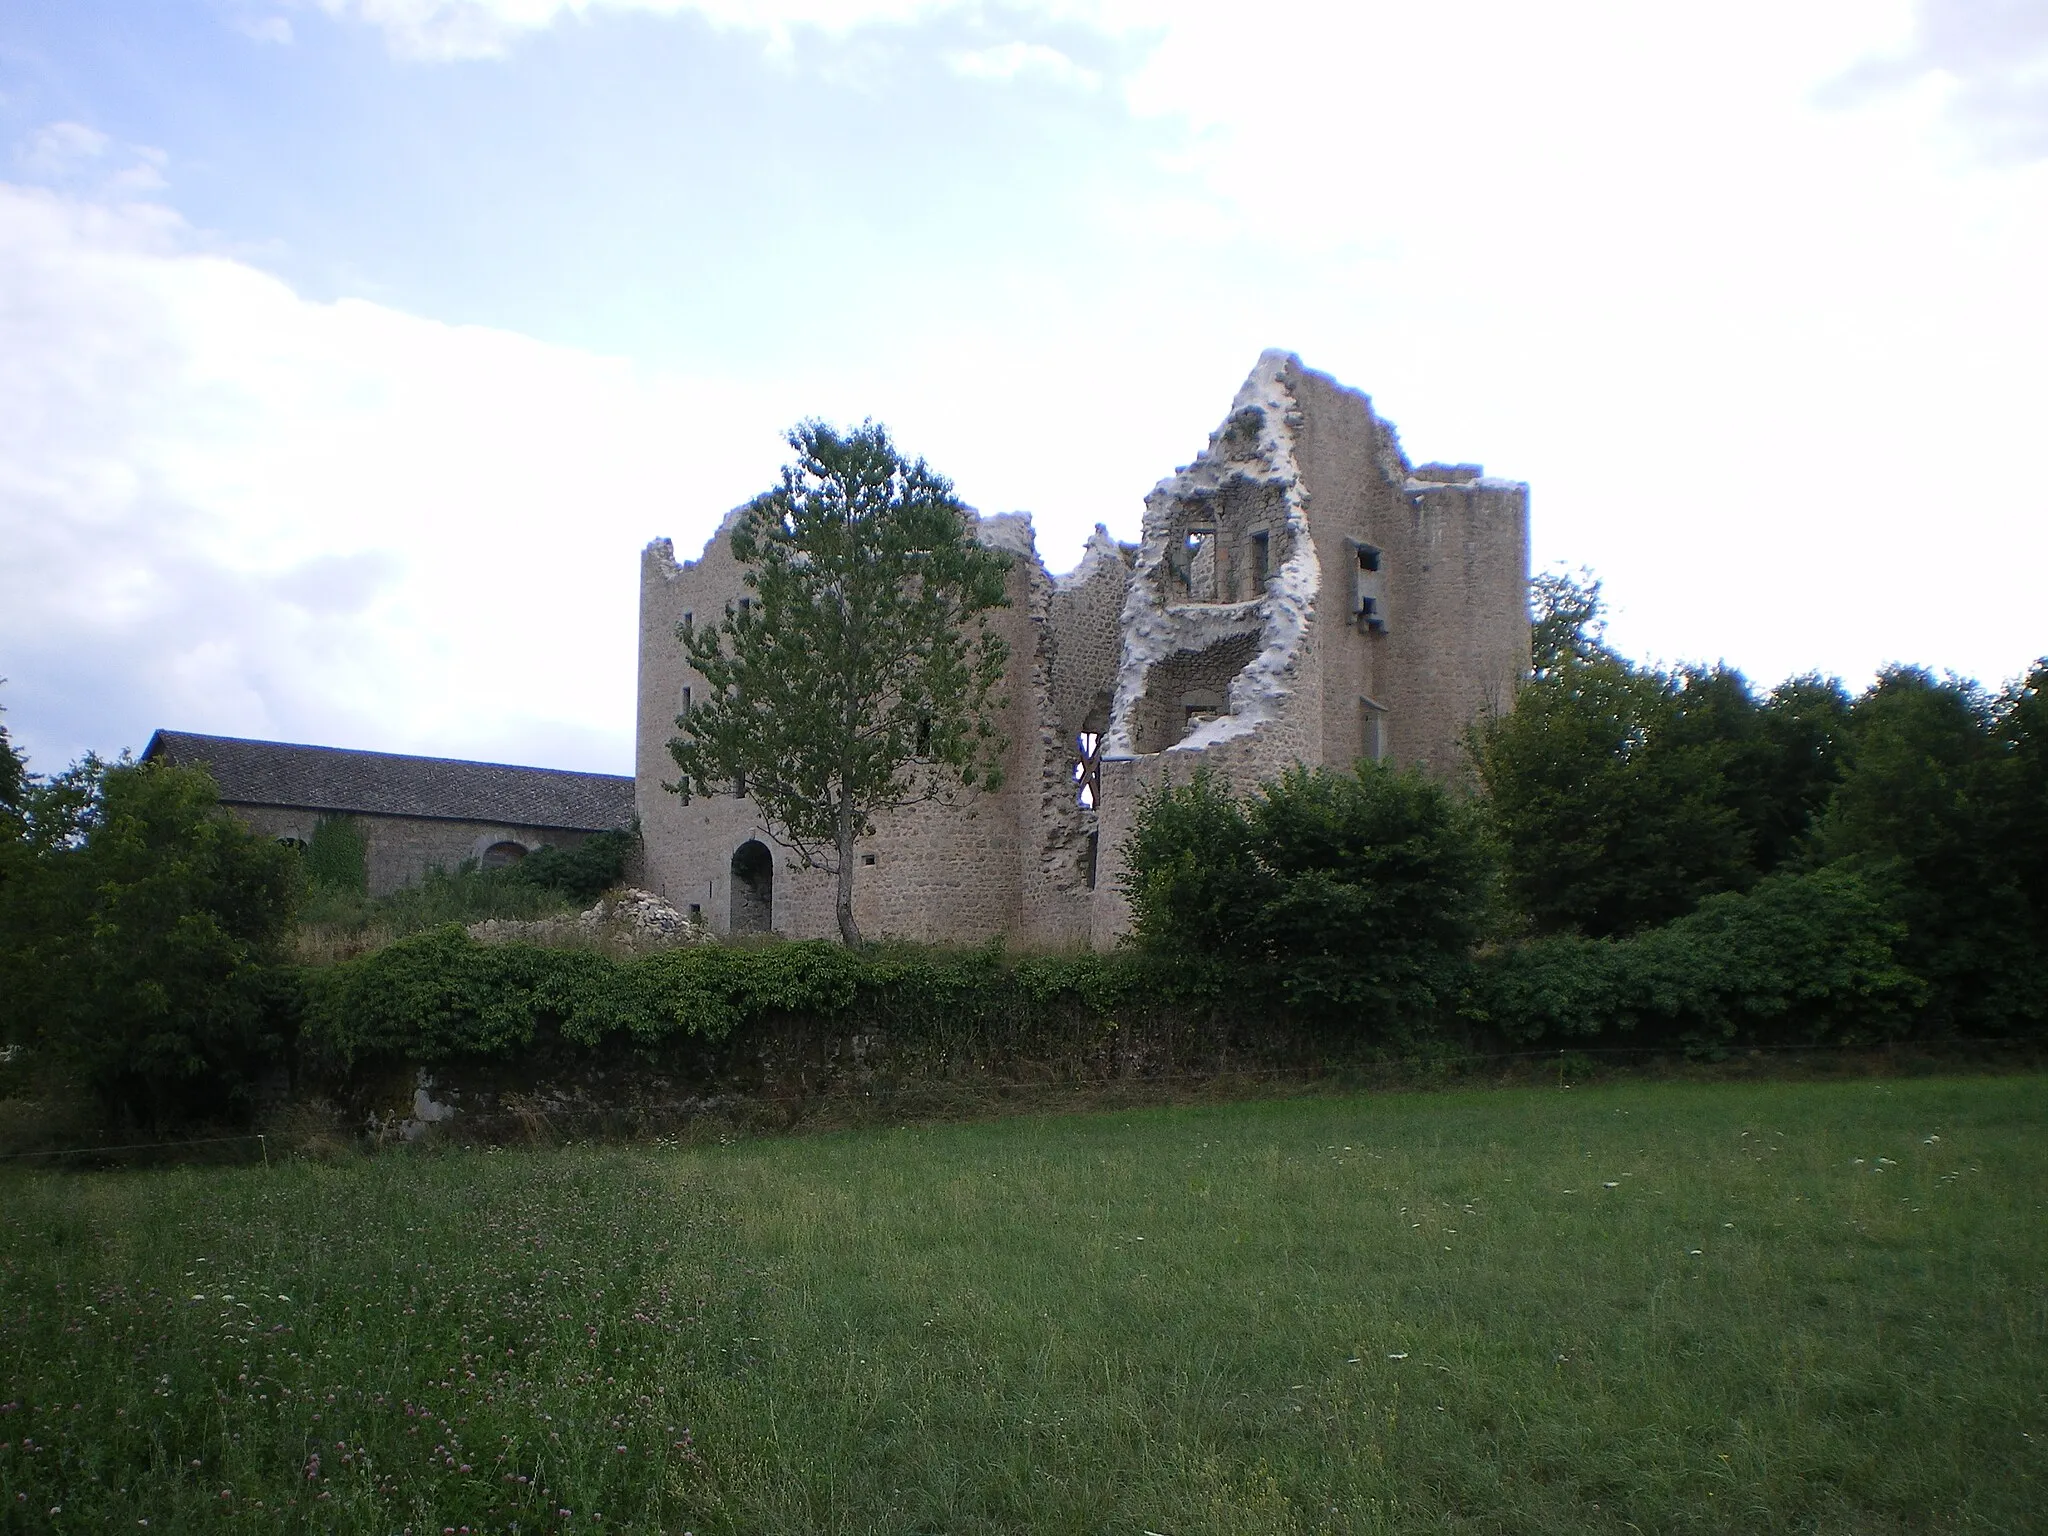 Photo showing: Château de Naucaze, Saint-Julien-de-Toursac, Cantal, France